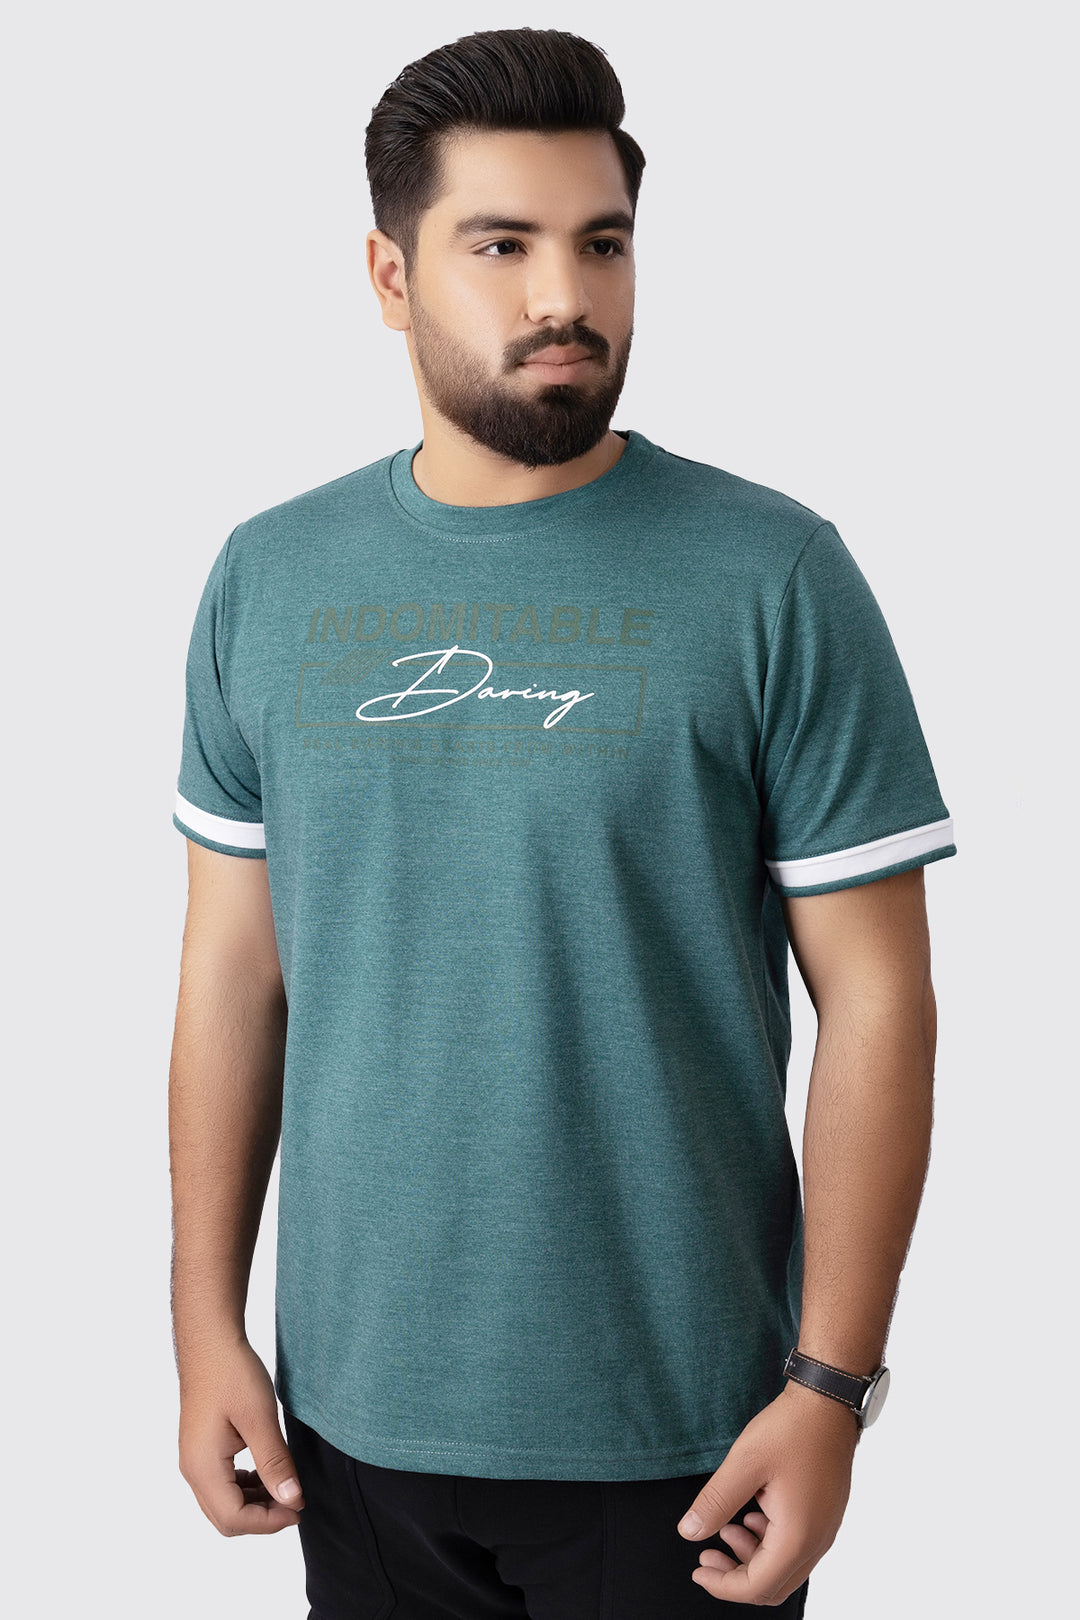 Daring Teal Melange T-Shirt (Plus Size) - A23 - MT0299P